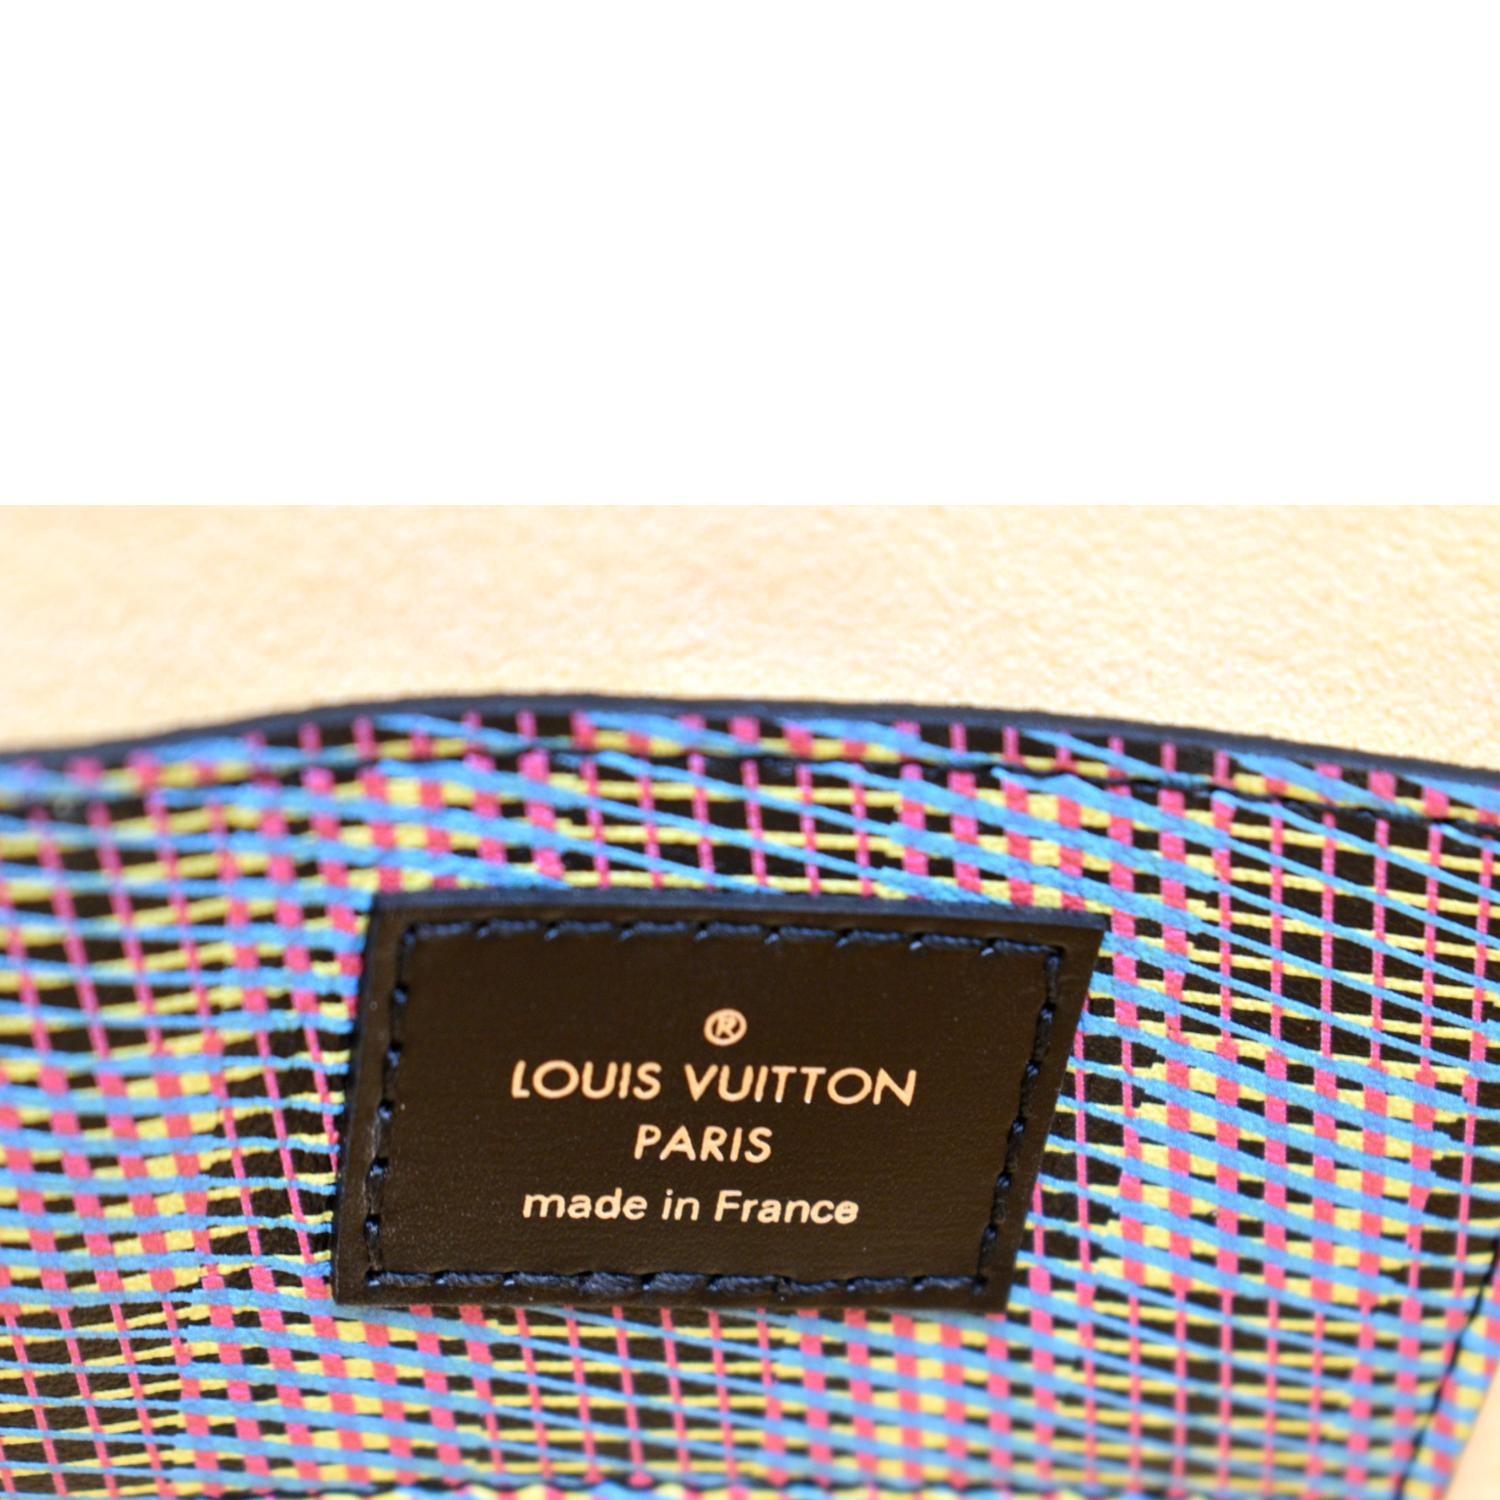 Louis Vuitton Trunk Clutch Damier Monogram Lv Pop Canvas Auction